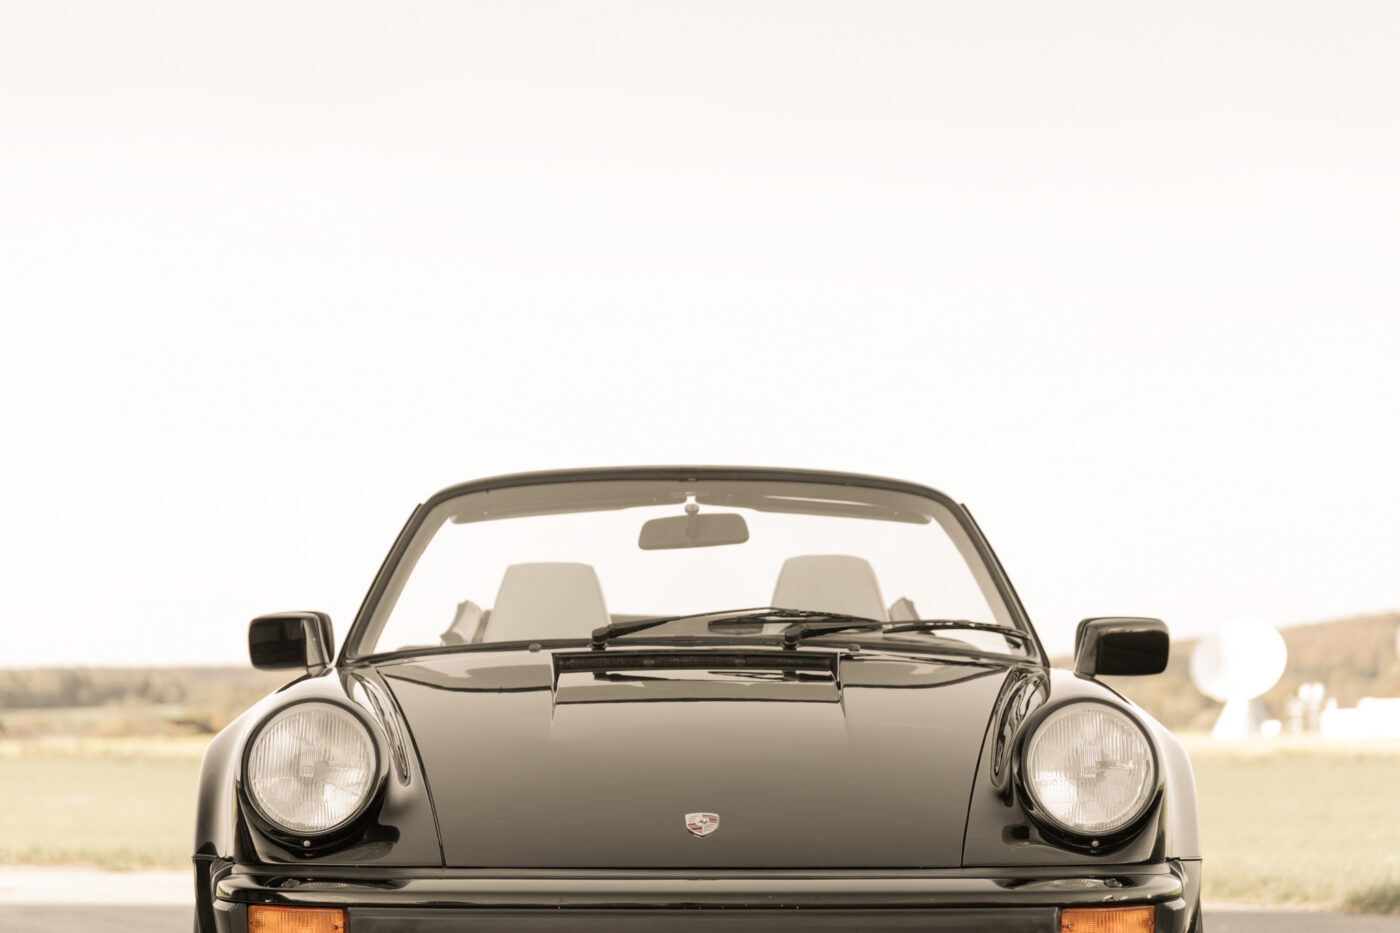 Bremsscheiben + Bremsbeläge für PORSCHE 911 3.2 WTL 930 Turbo 3.3